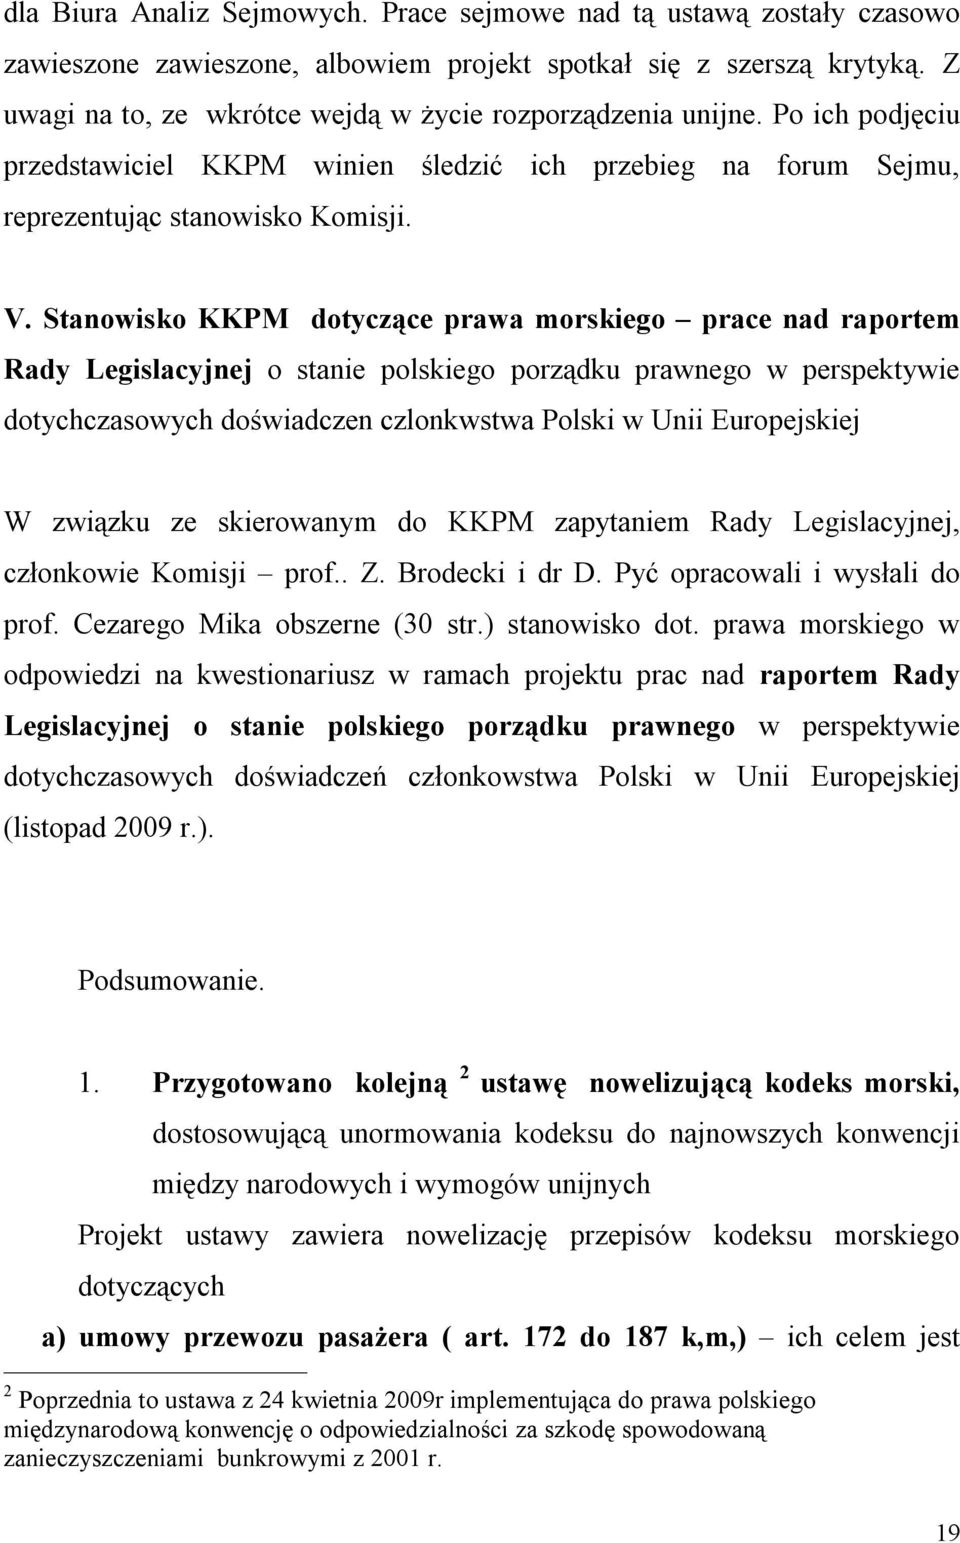 Stanowisko KKPM dotyczące prawa morskiego prace nad raportem Rady Legislacyjnej o stanie polskiego porządku prawnego w perspektywie dotychczasowych doświadczen czlonkwstwa Polski w Unii Europejskiej